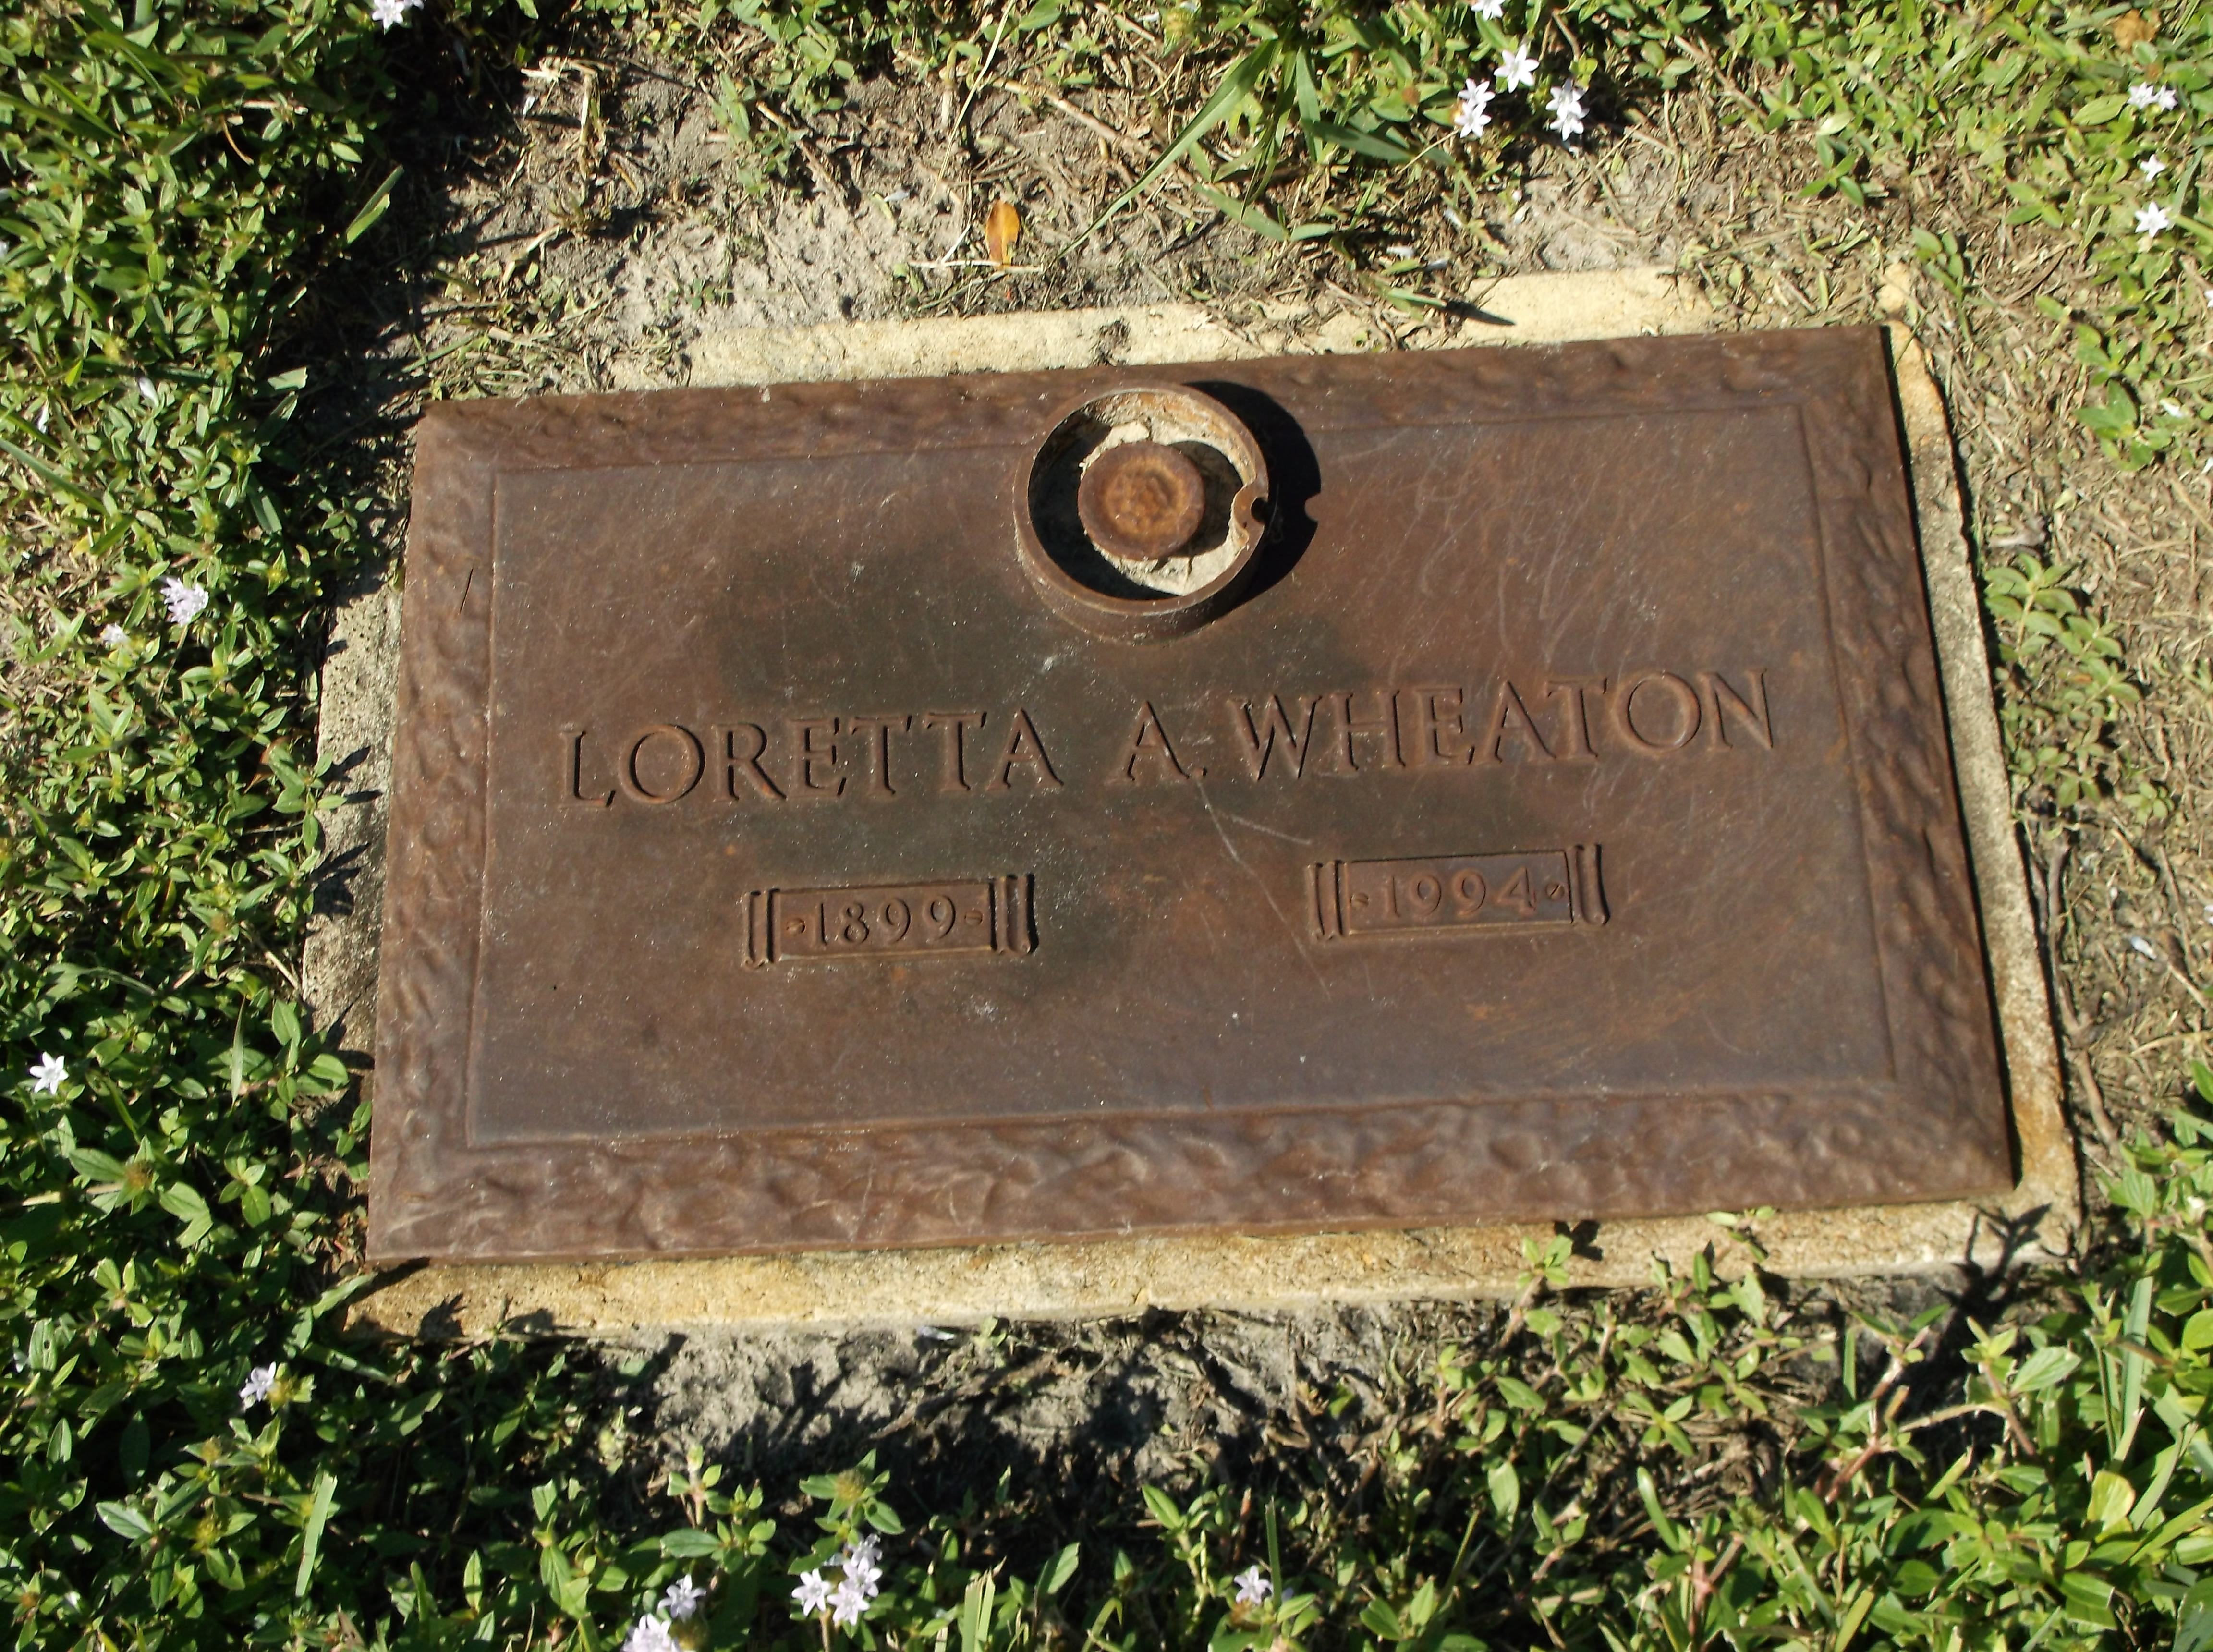 Loretta A Wheaton